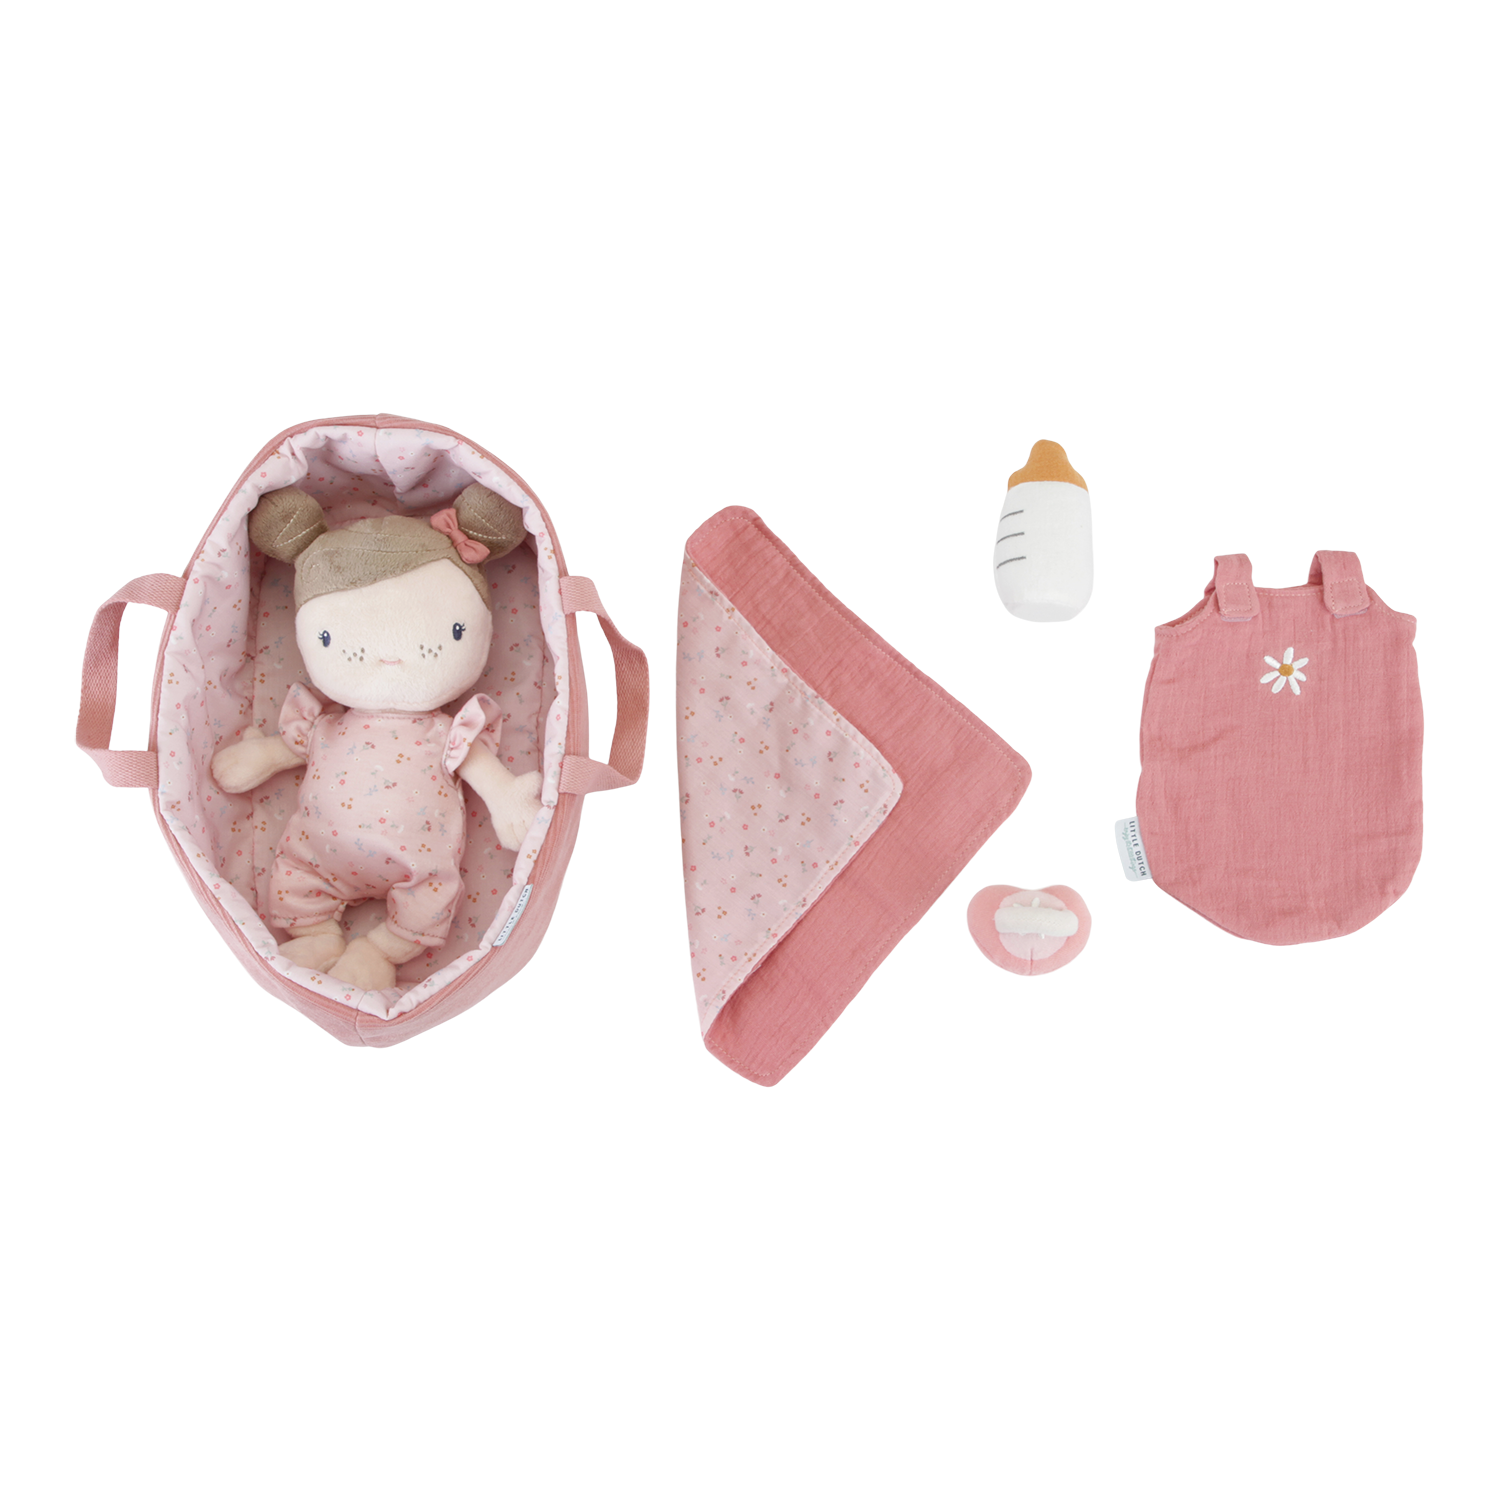 Stoffpuppe Baby Rosa mit Tragekorb und Zubehör Little pink Flowers